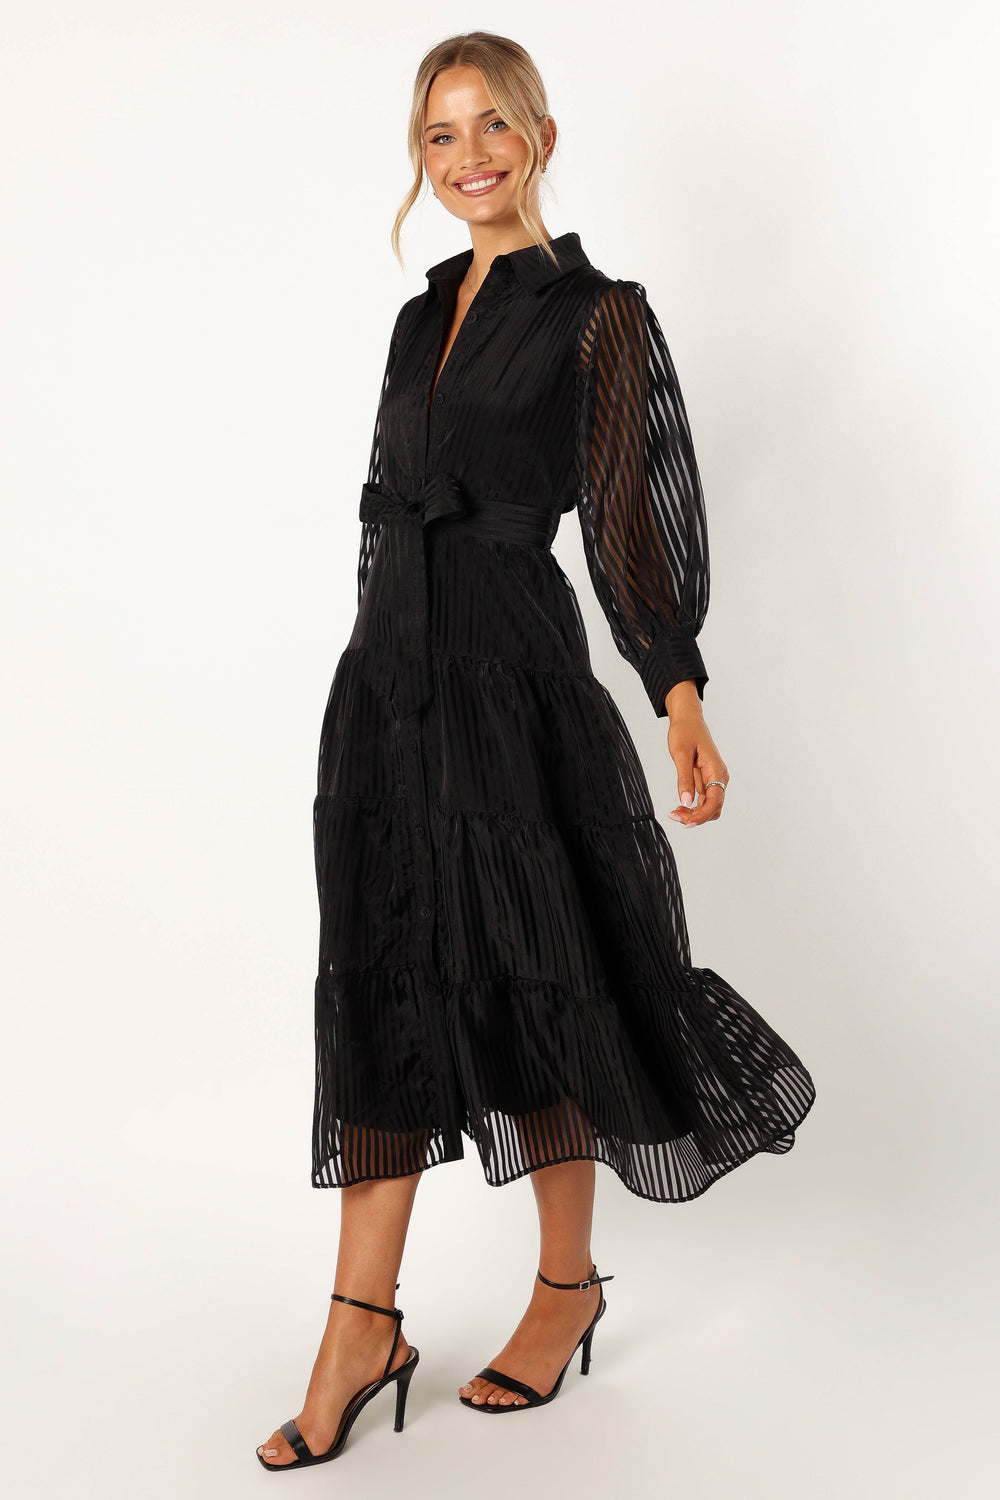 Neve Long & Petal - Sleeve Black USA Dress Pup Maxi 